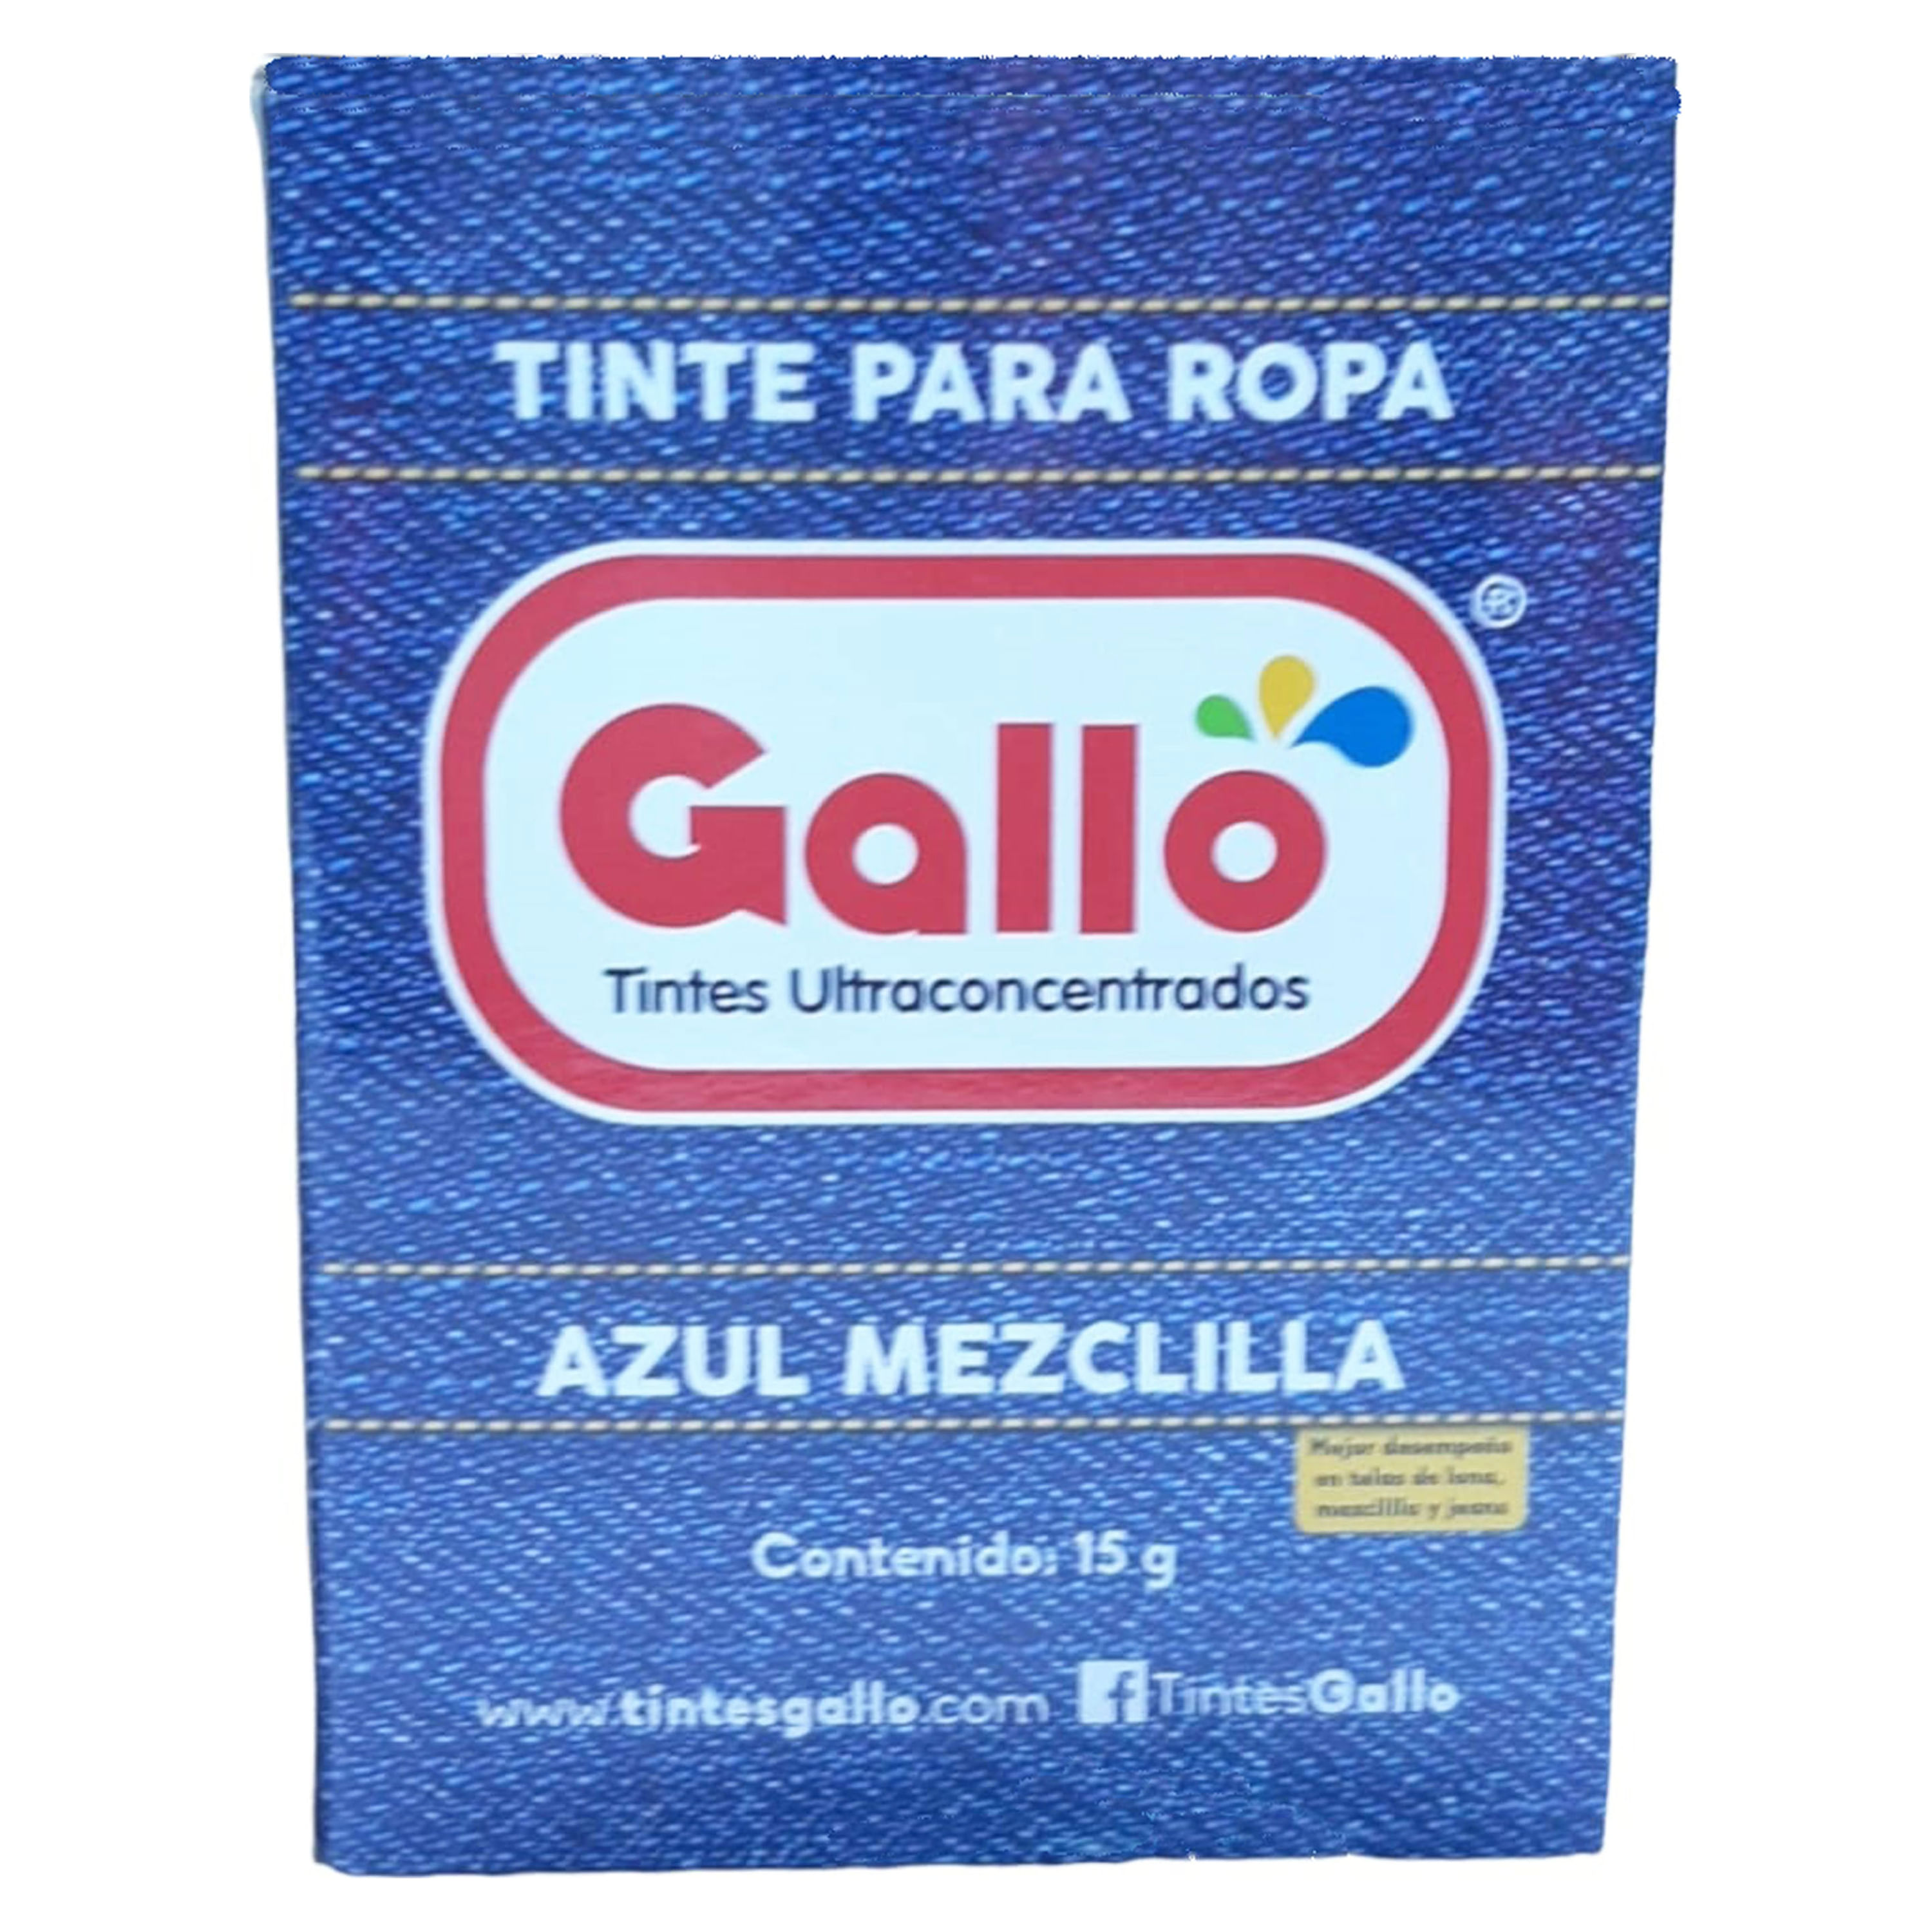 Tintes Gallo - ¿Sos de Guatemala? En Dollarcity encontrarás Tintes para ropa  Gallo.